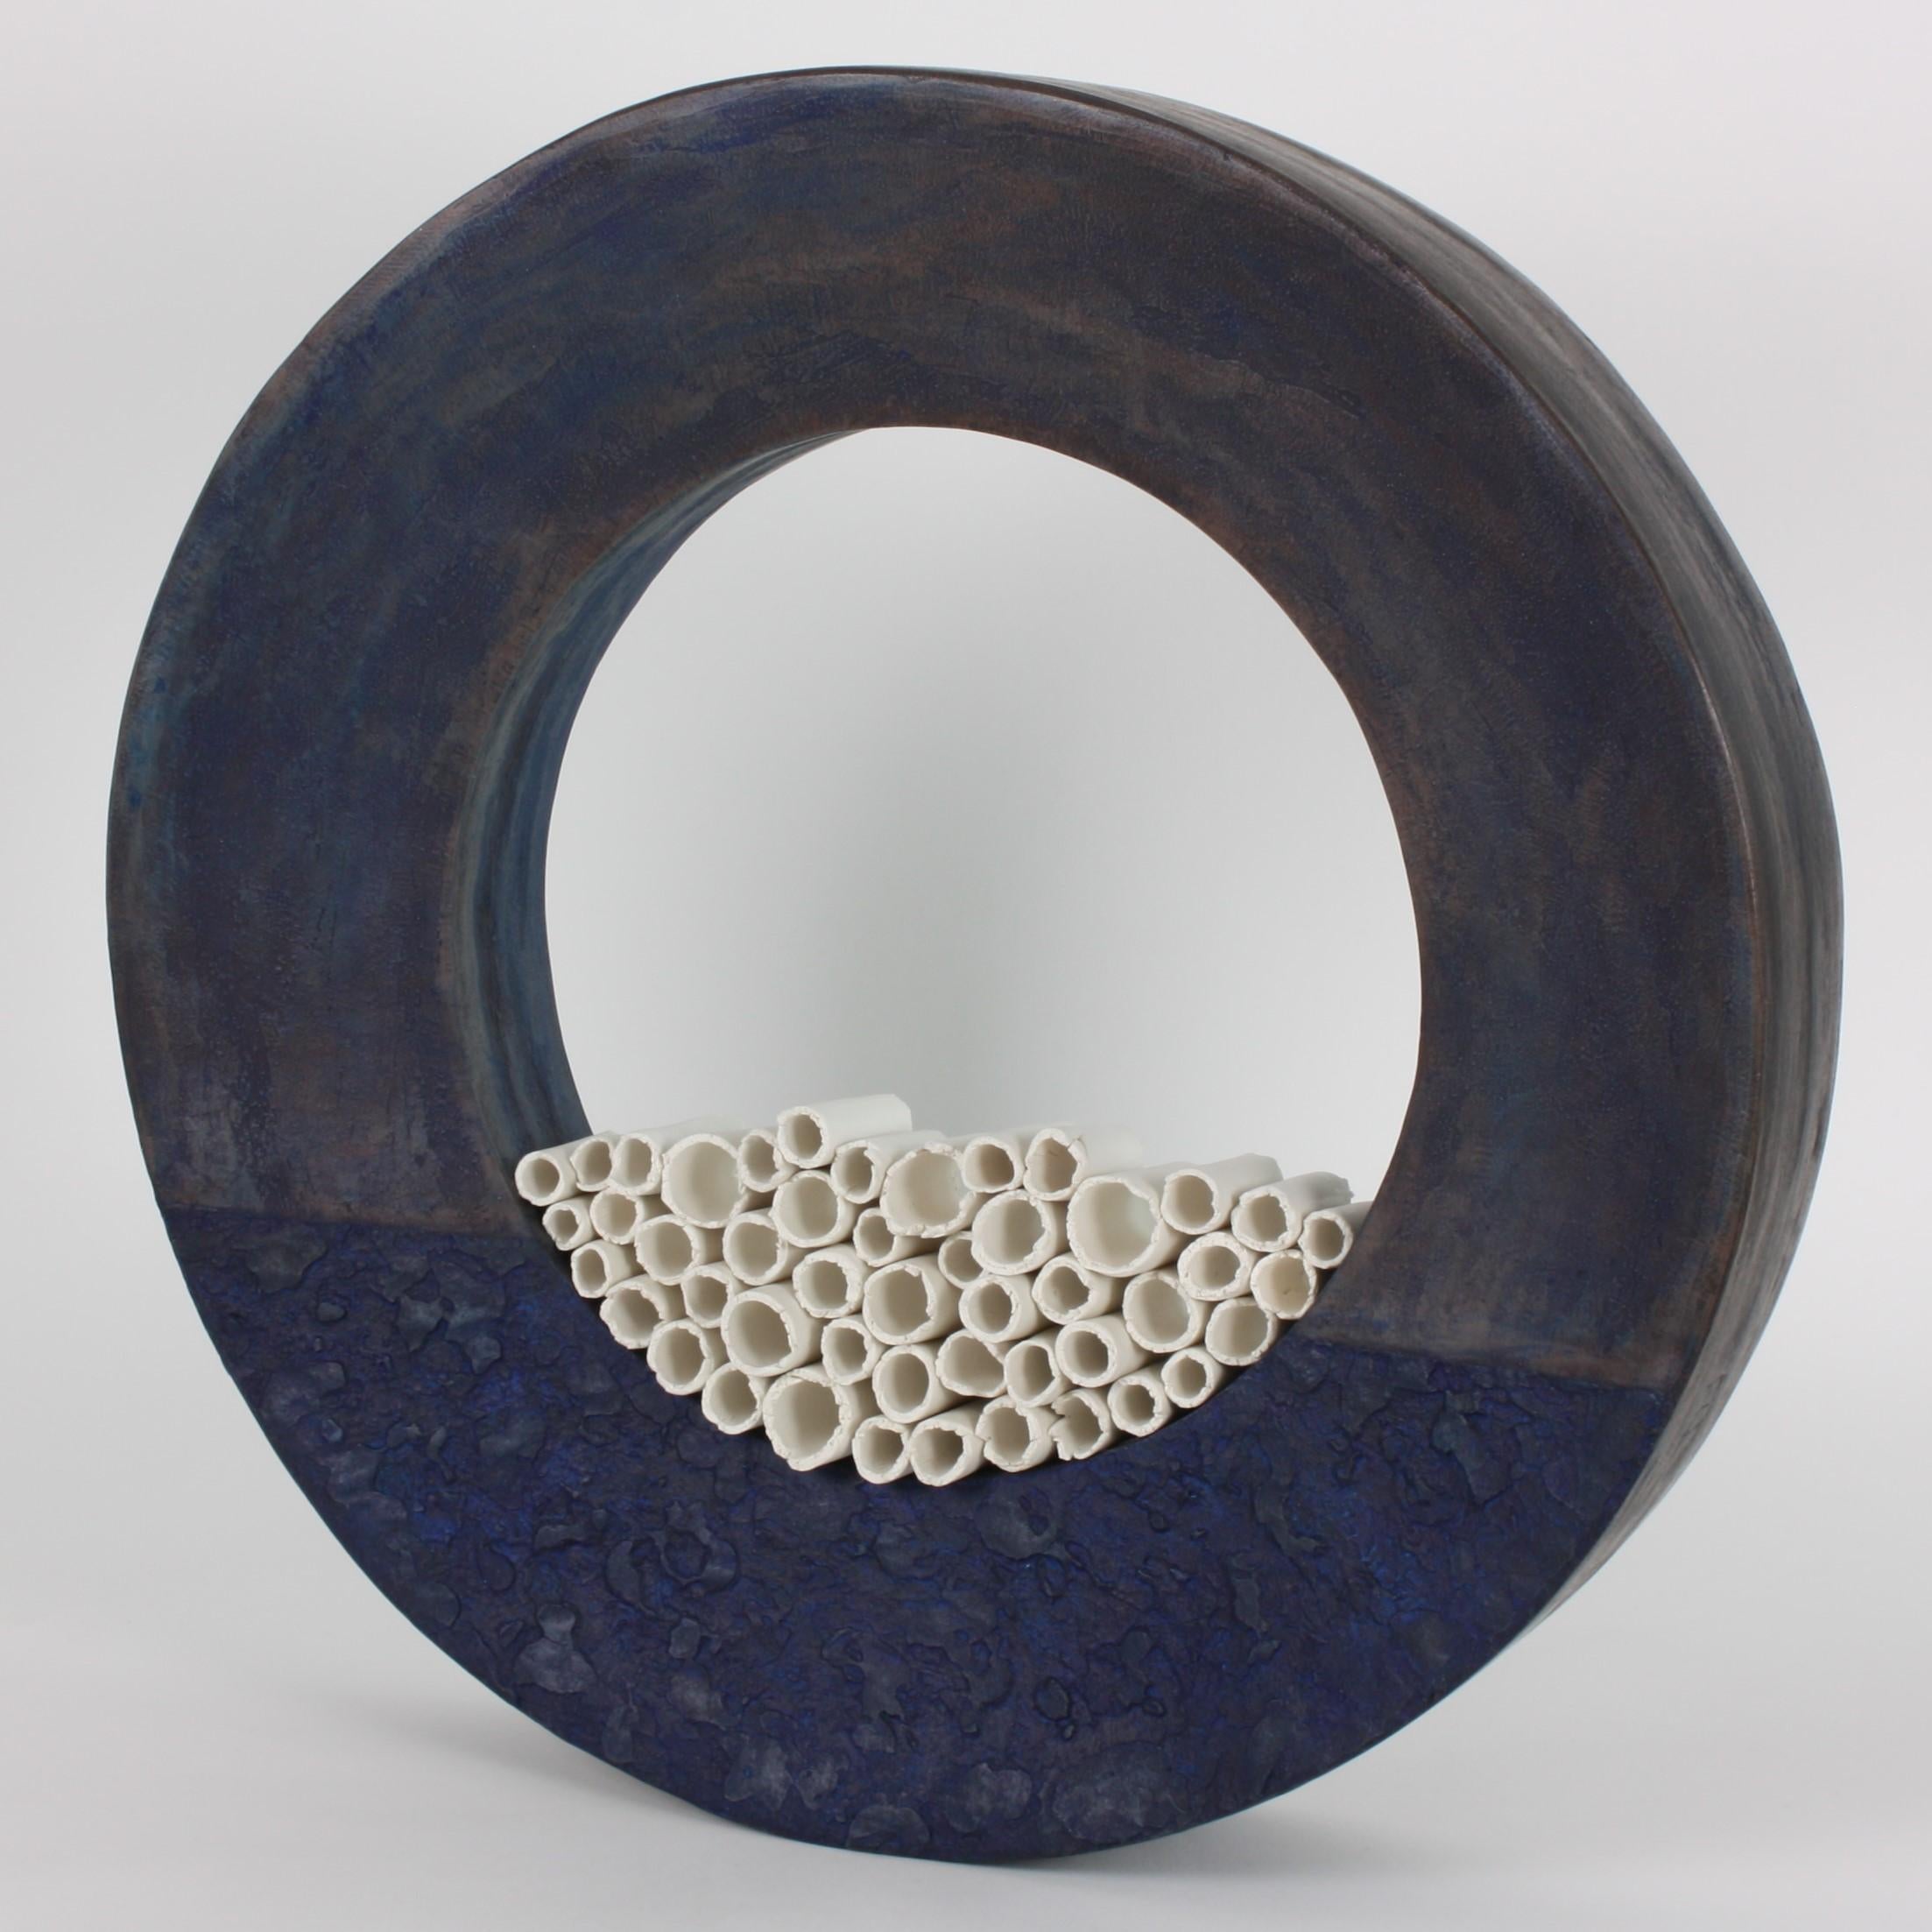 Minimalist Contemporary Ceramic Sculpture, Grand Anneau Bleu